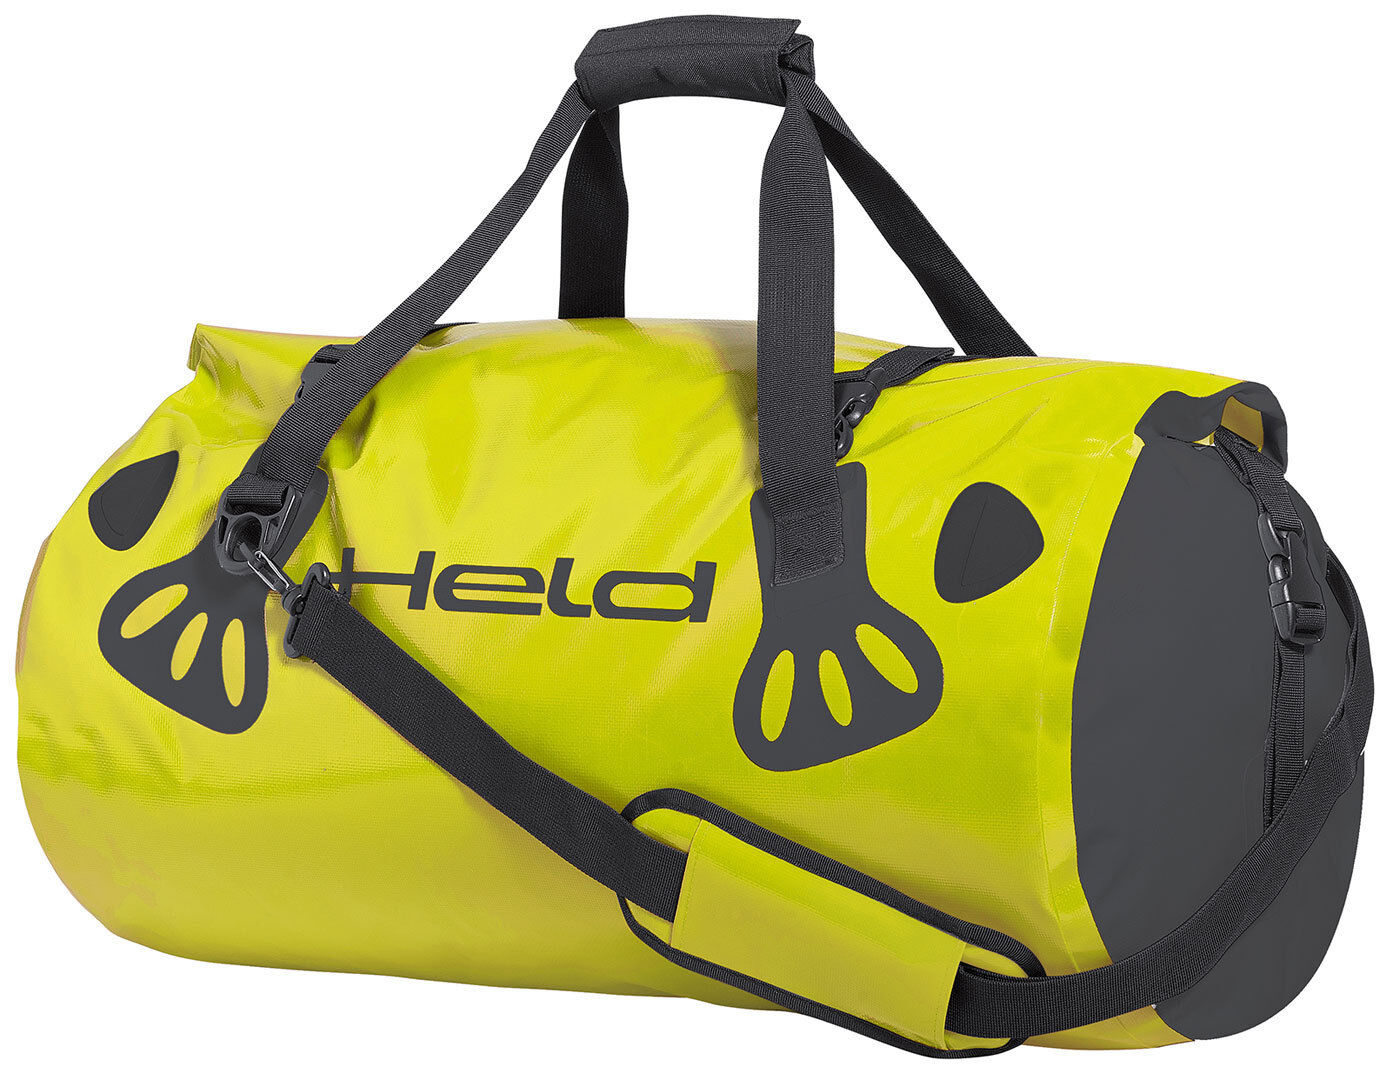 Held Carry-Bag Sacchetto dei bagagli Nero Giallo 21-30l